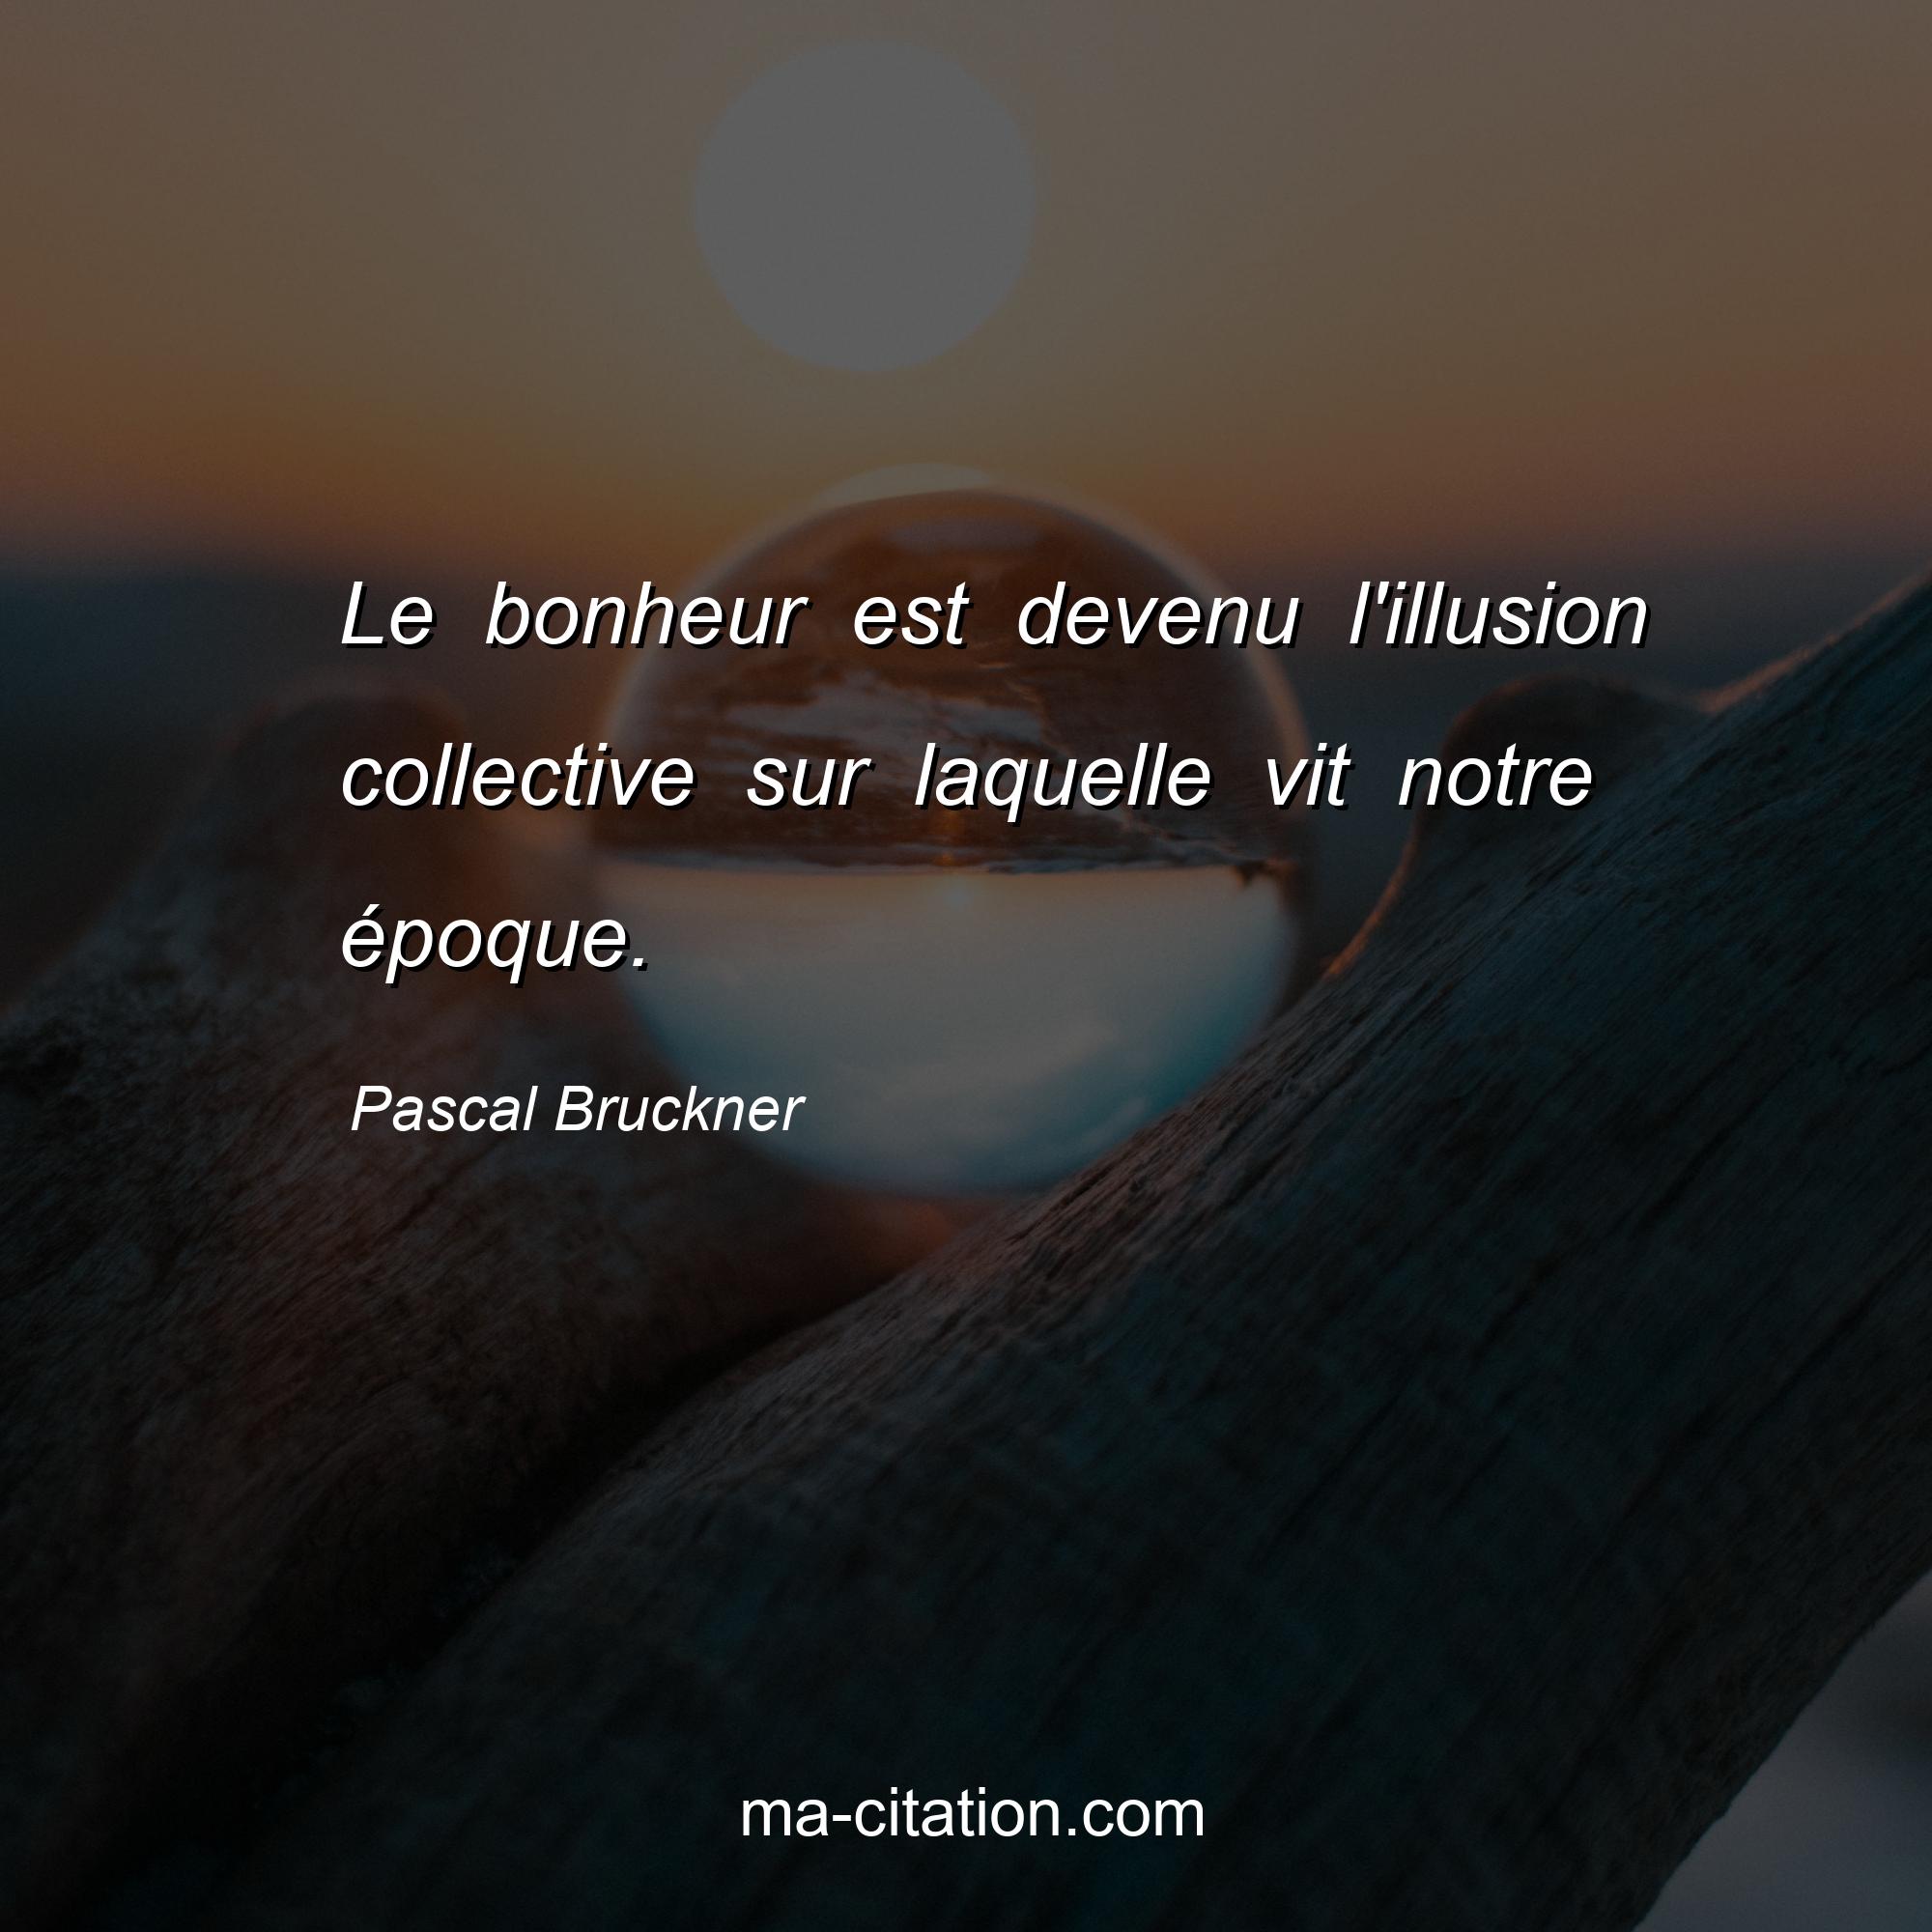 Pascal Bruckner : Le bonheur est devenu l'illusion collective sur laquelle vit notre époque.